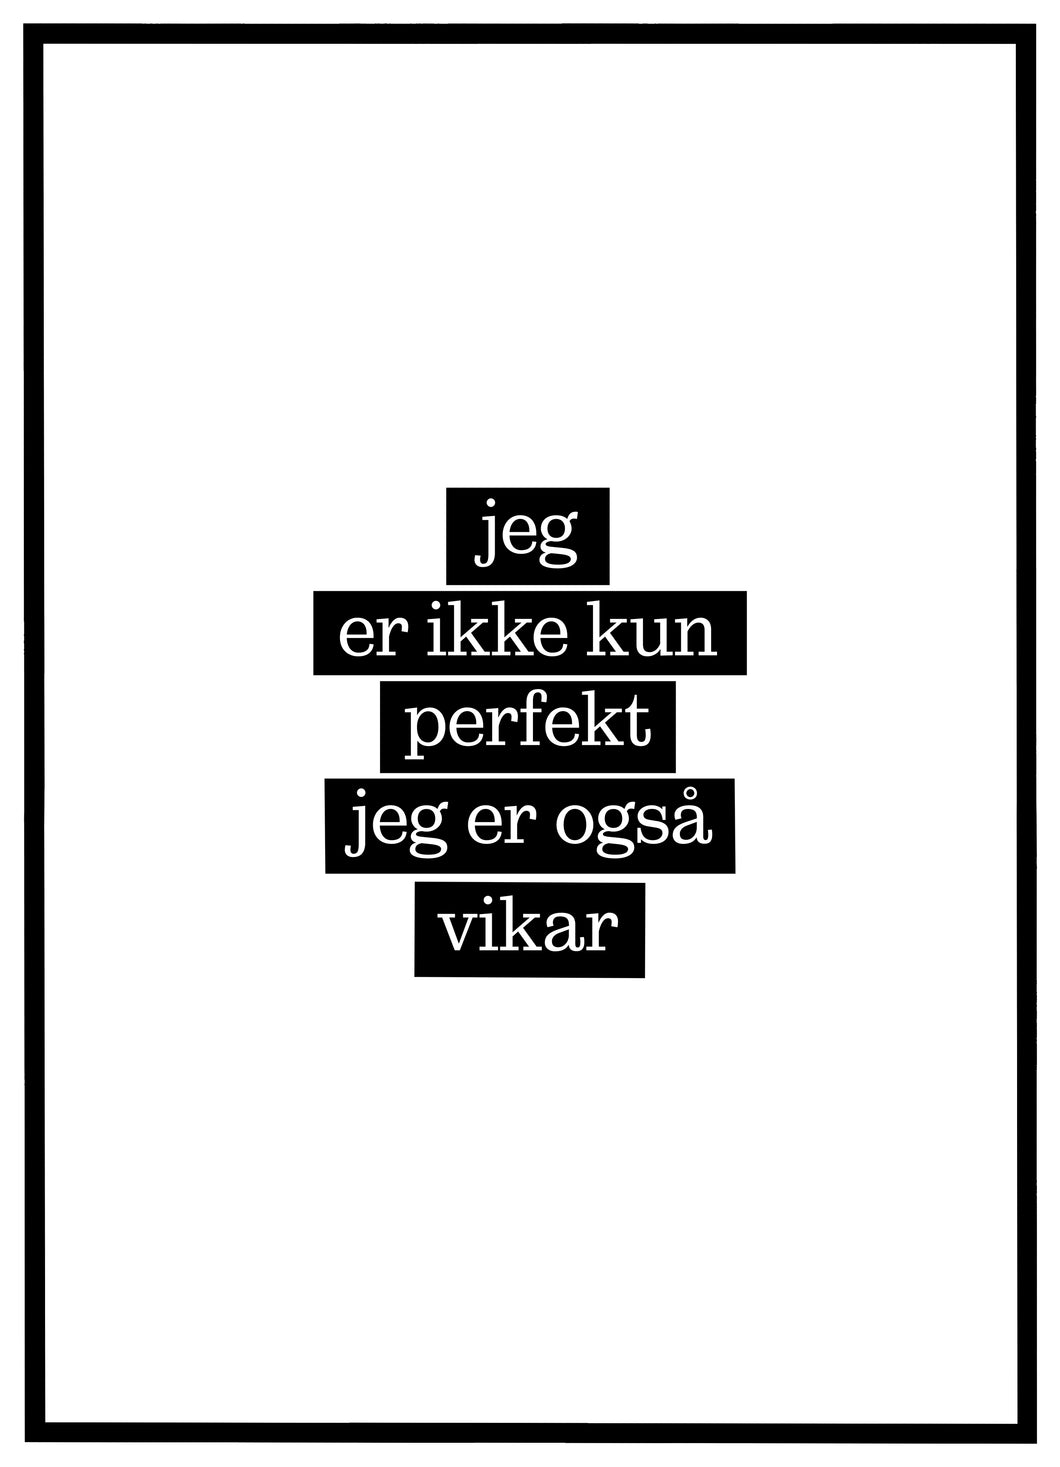 Jeg er ikke kun perfekt, jeg er også Vikar - Plakat